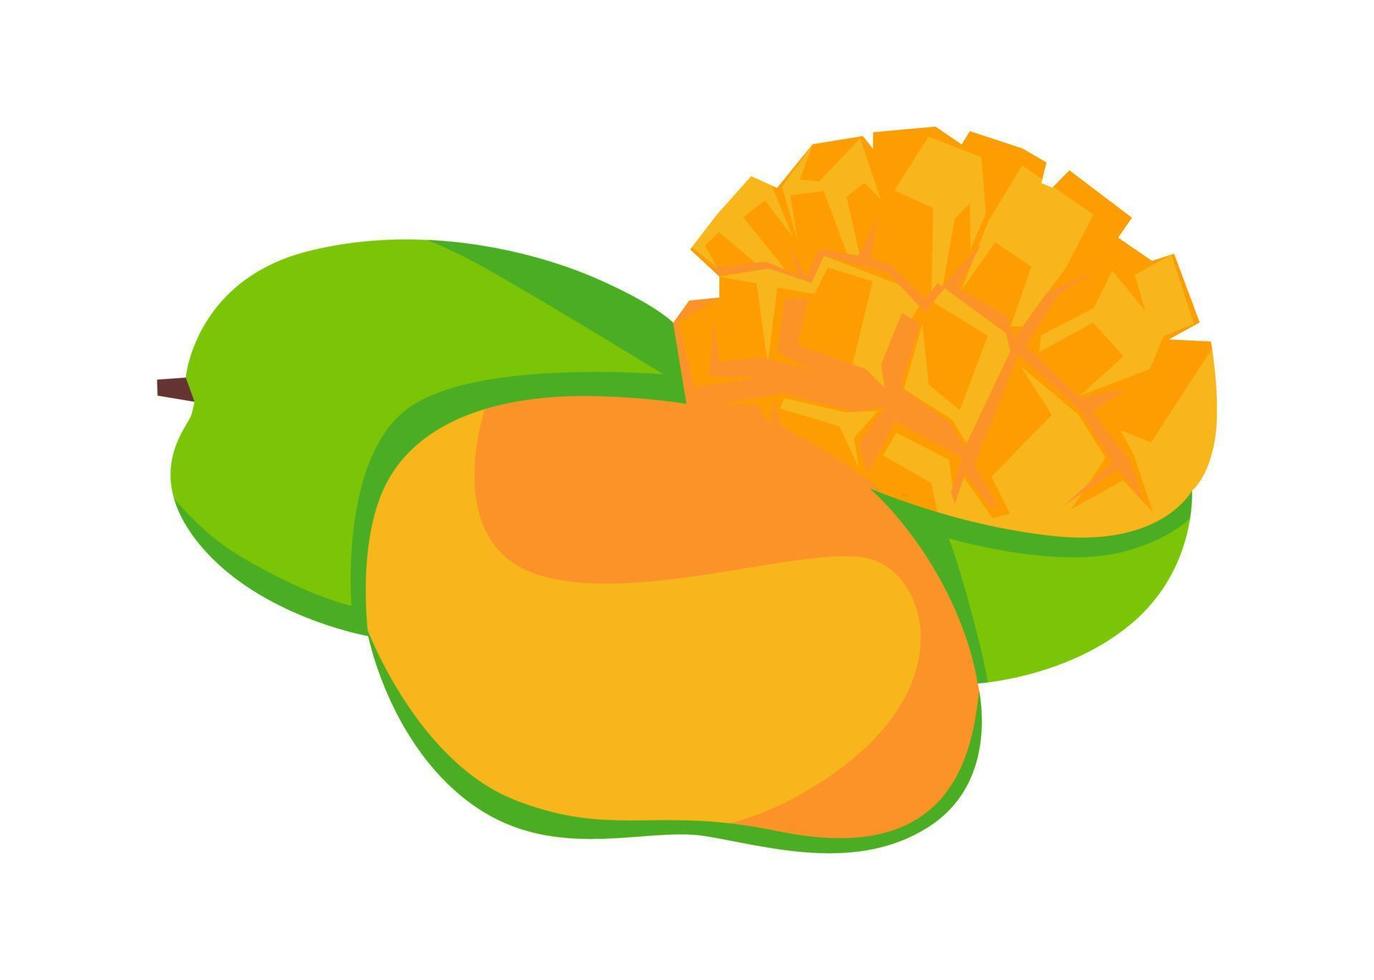 disegno vettoriale, illustrazione, icona o simbolo di forma di frutta fresca di mango vettore